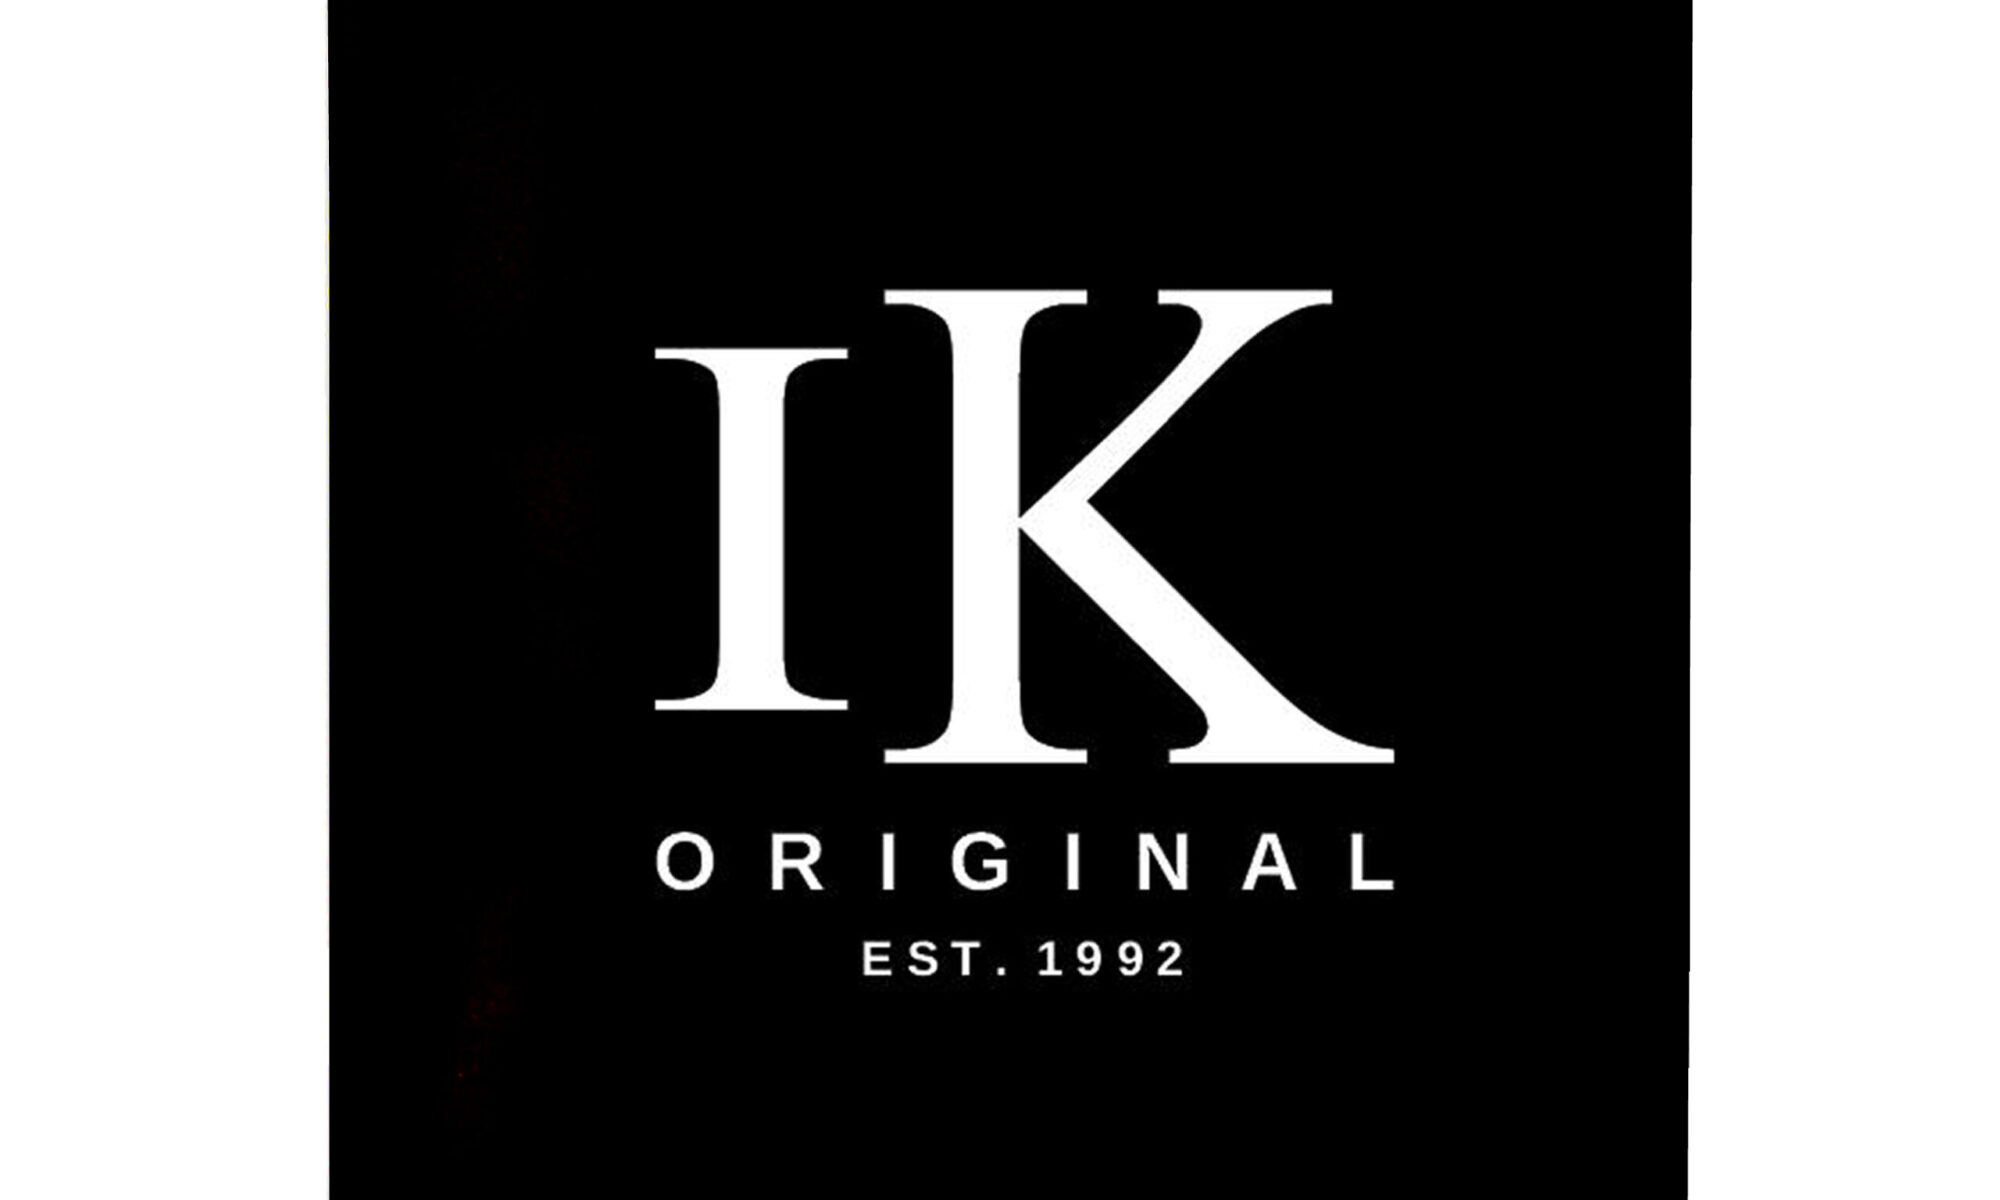 IK-Original-Artwork-Black-EST-1992-Limited-Edition-scaled